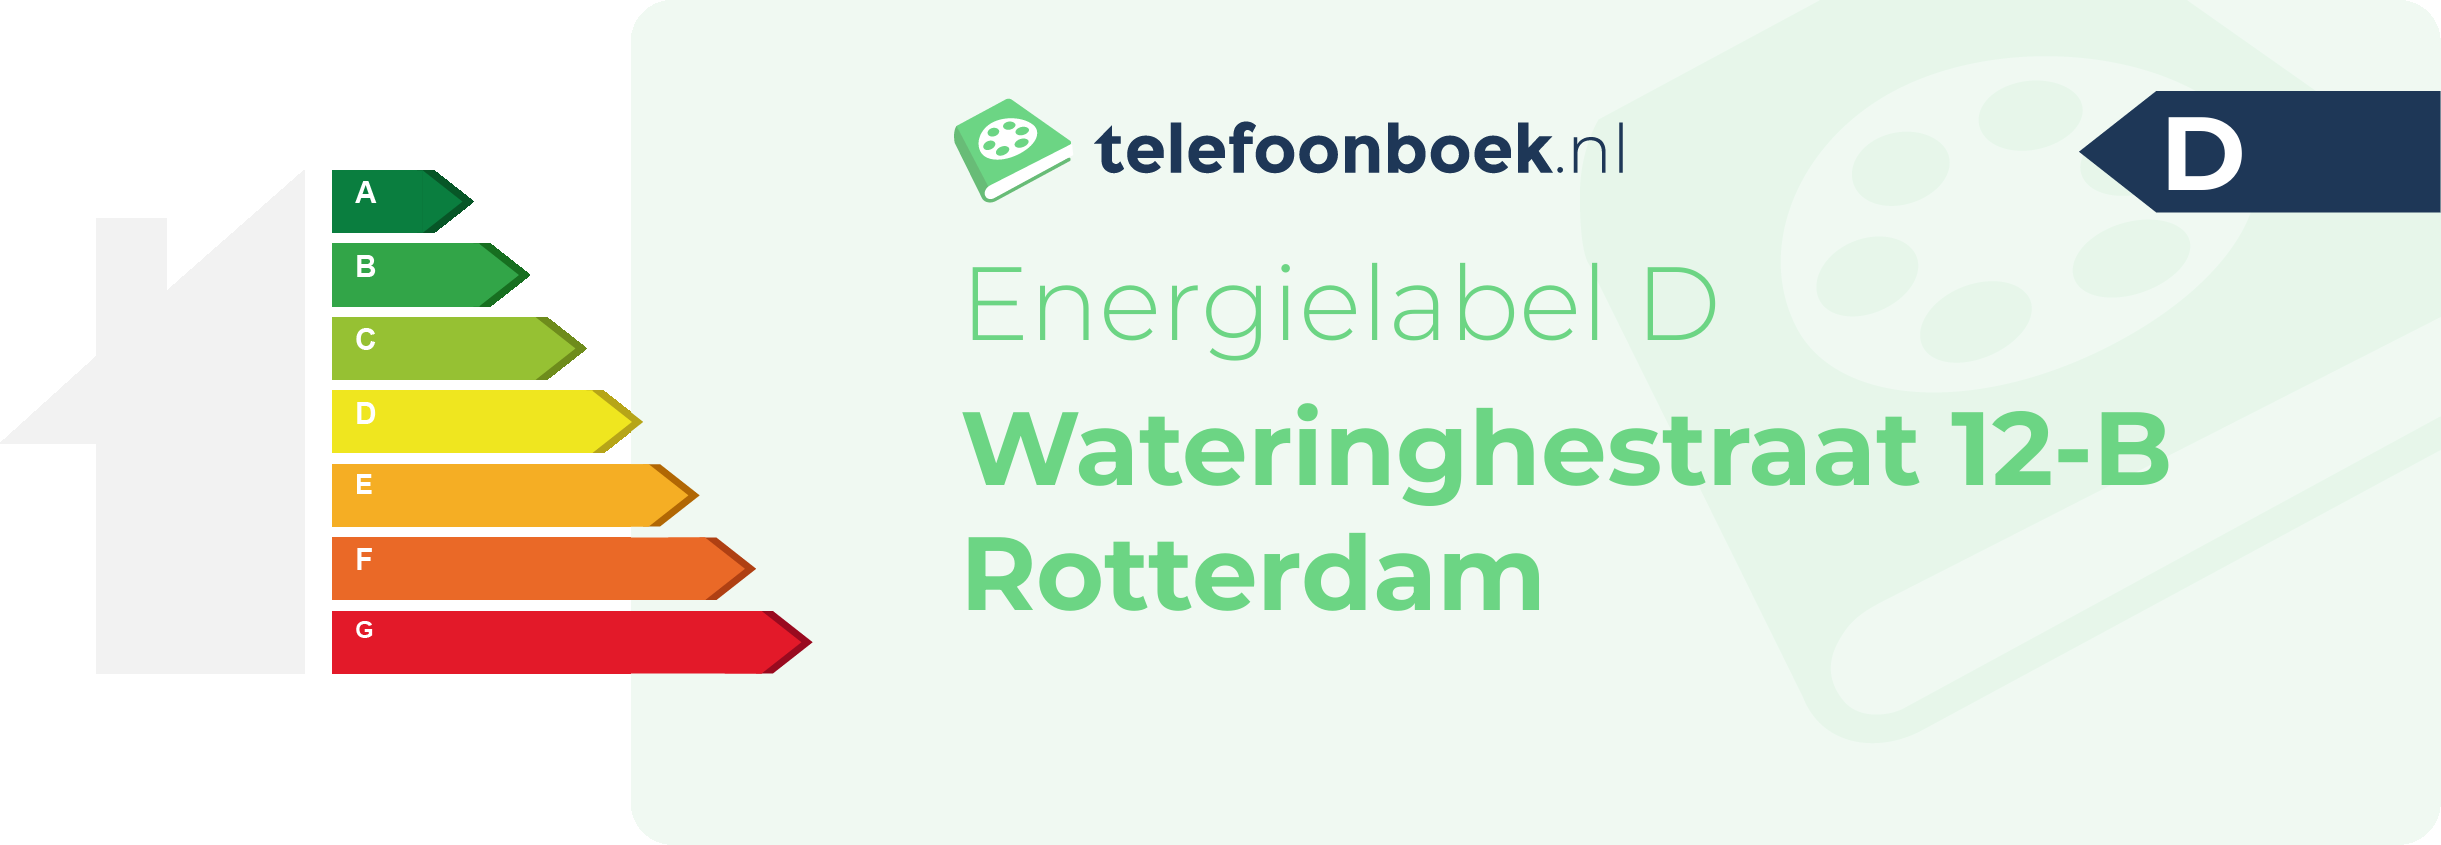 Energielabel Wateringhestraat 12-B Rotterdam